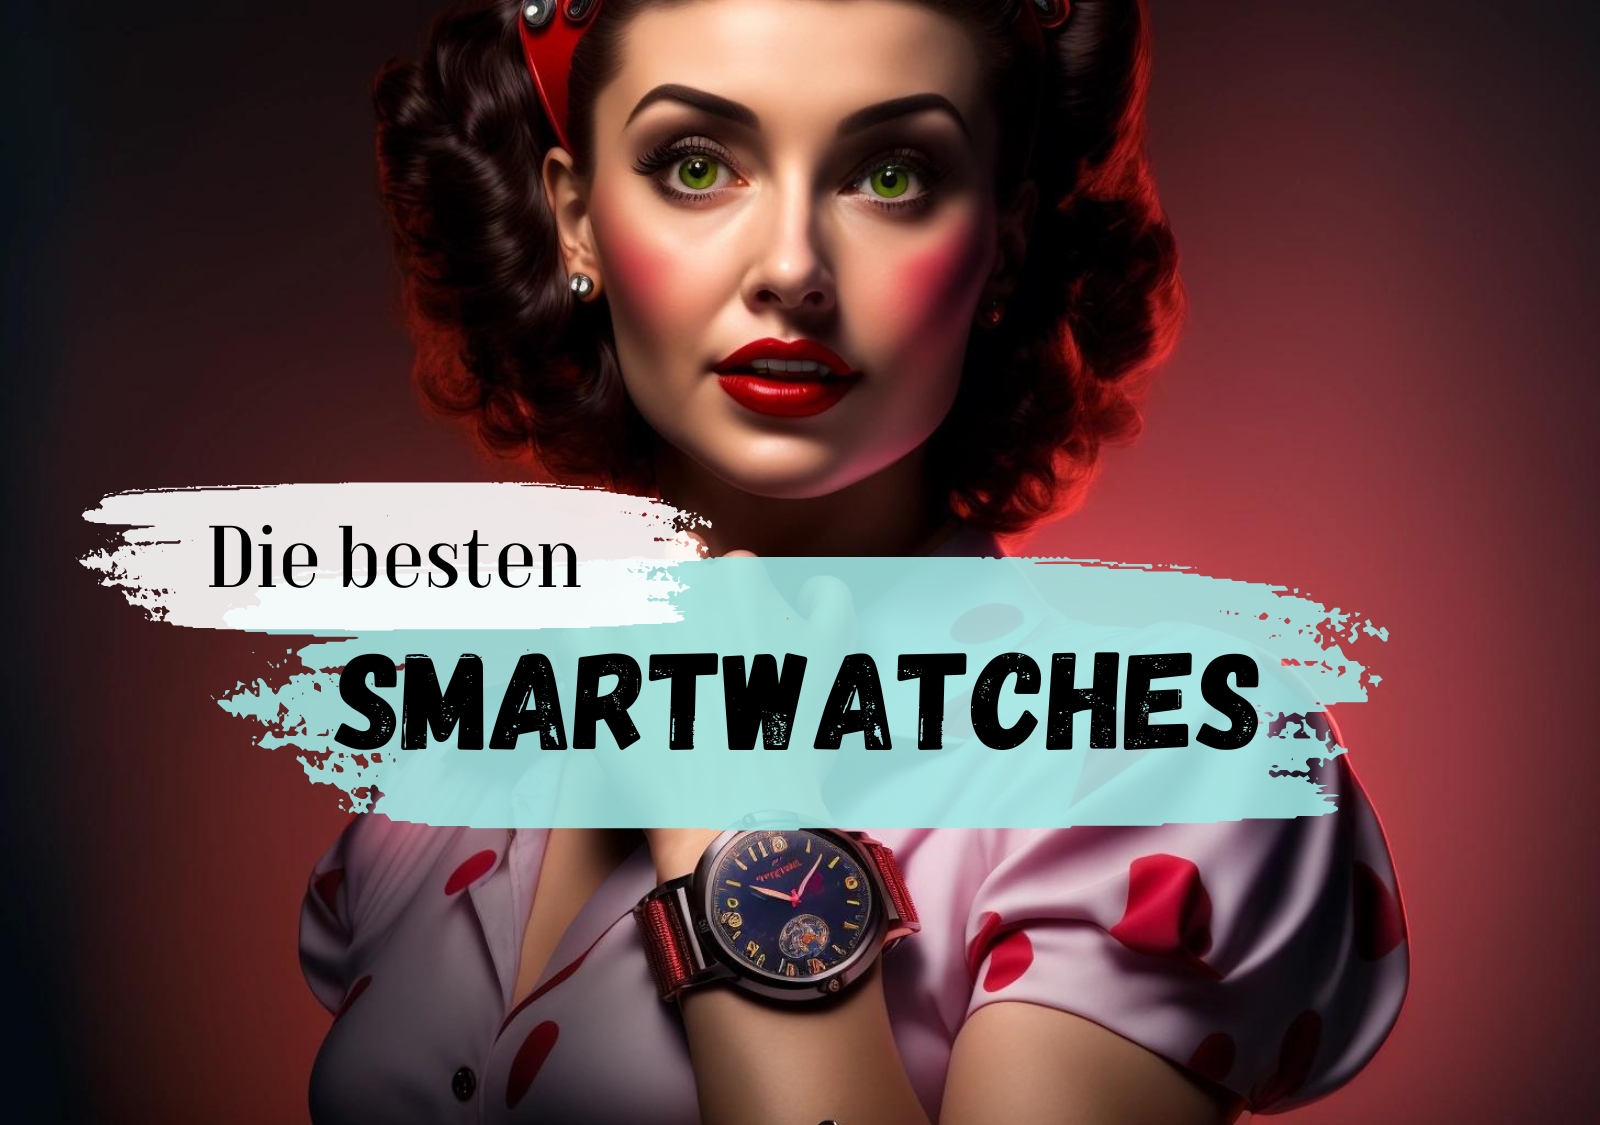 Kaufen Sie die beste Smartwatch, die Ihr Geld zu bieten hat: Ein Must-Have für moderne Smartphone-Nutzer!